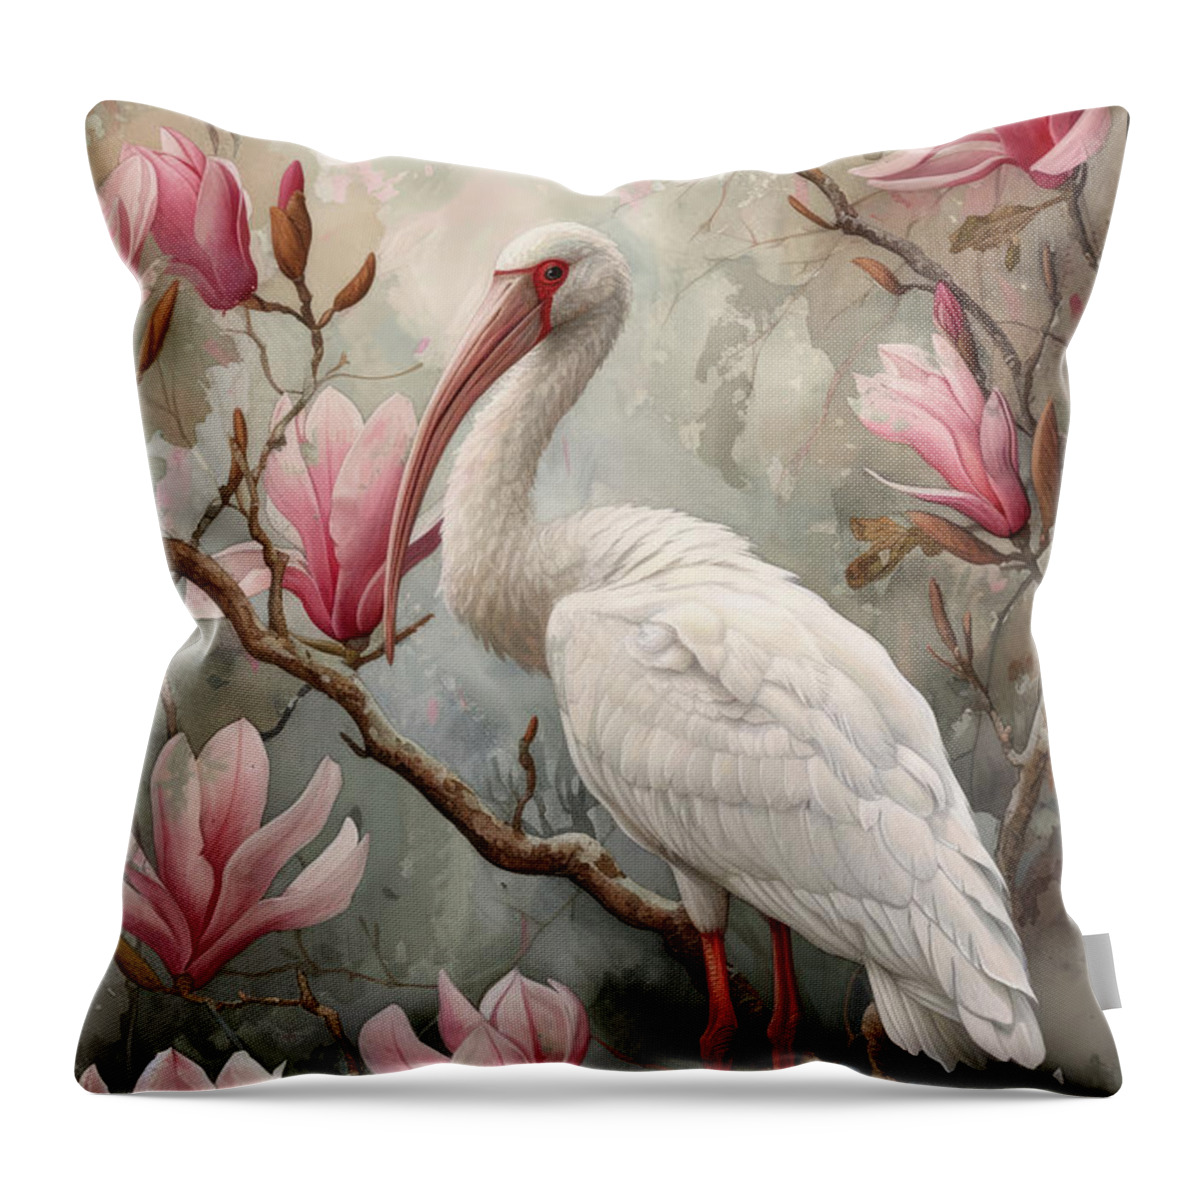 White Ibis Throw Pillow featuring the painting White Ibis by Tina LeCour